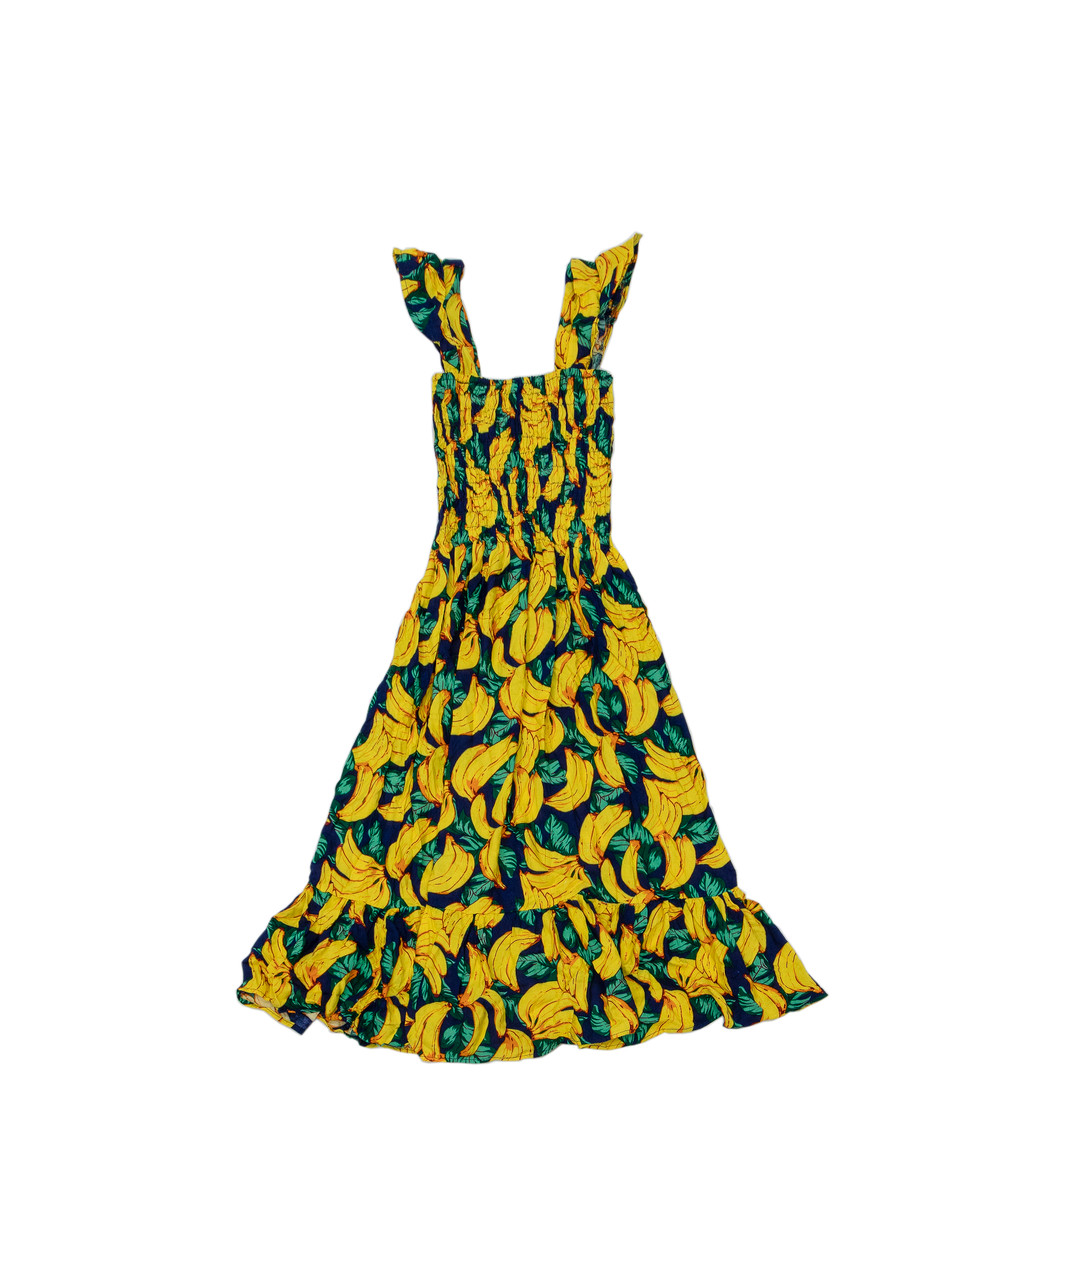 yellow patterned dress